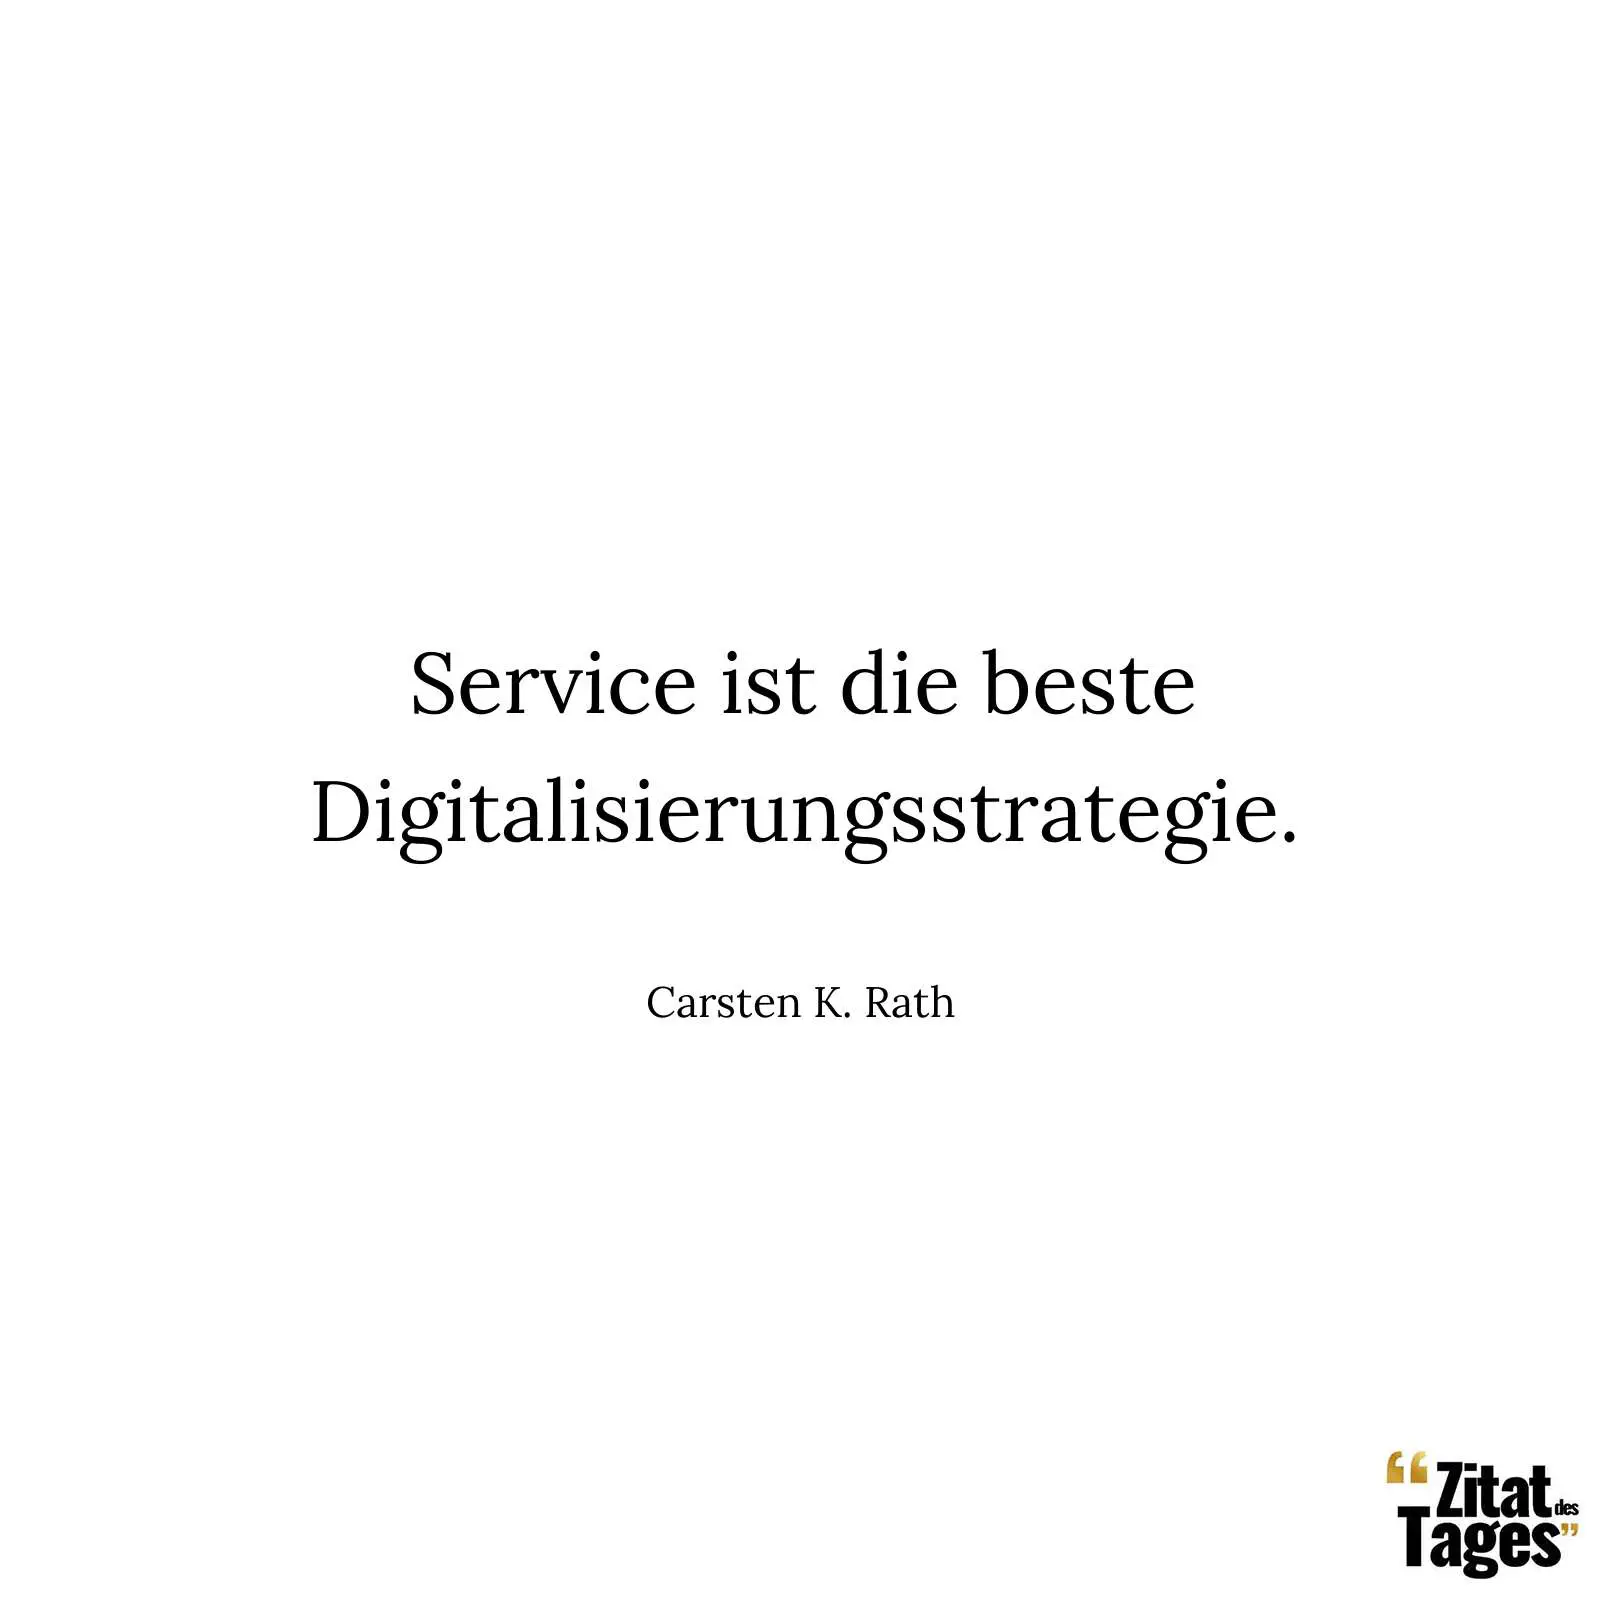 Service ist die beste Digitalisierungsstrategie. - Carsten K. Rath